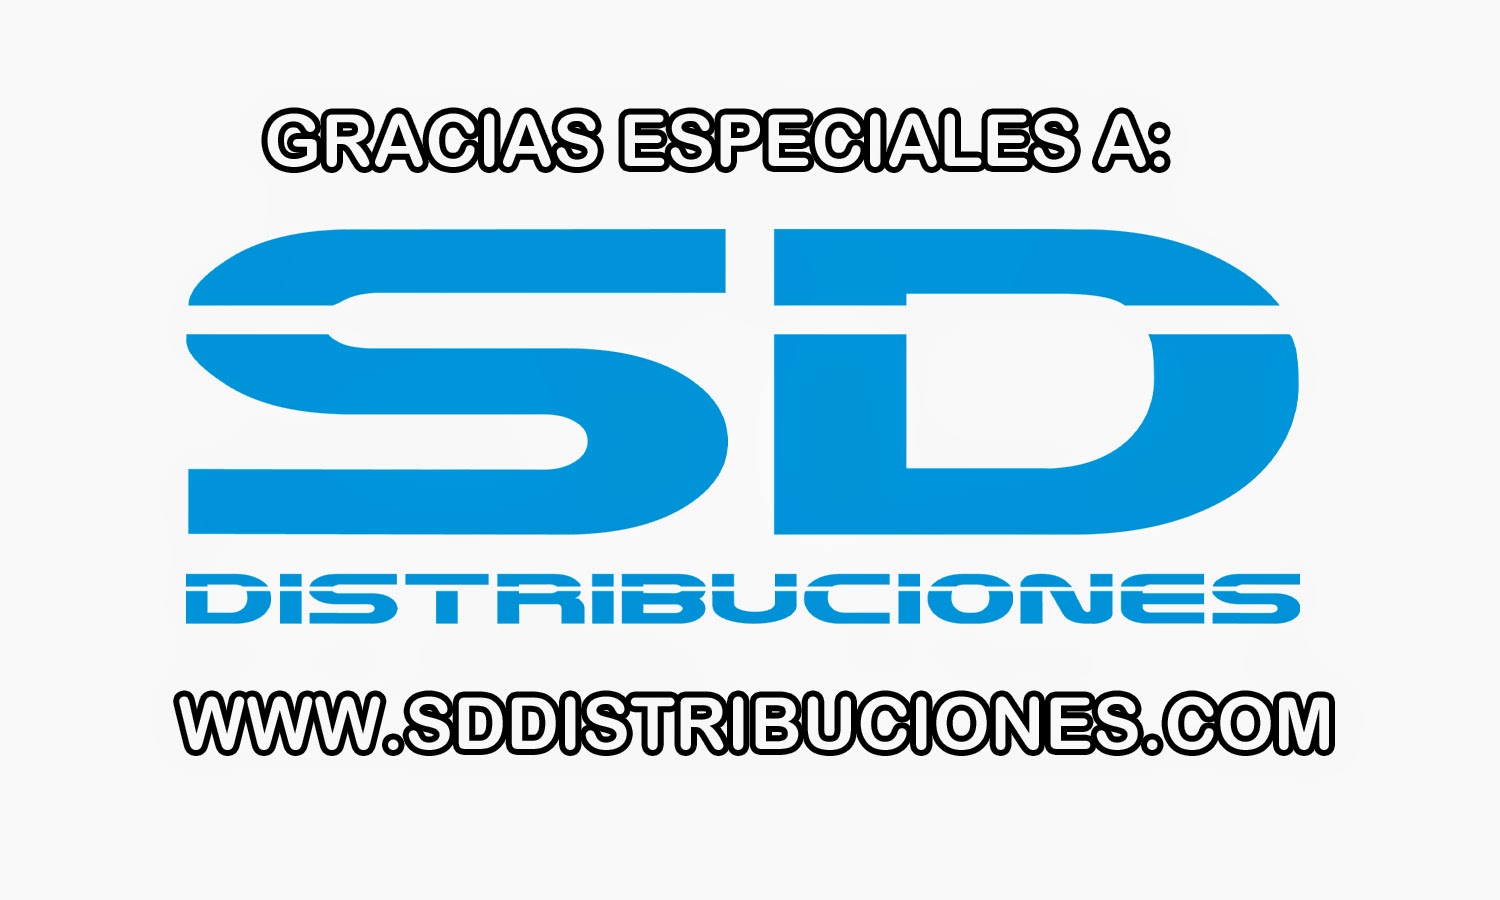 http://www.sddistribuciones.com/